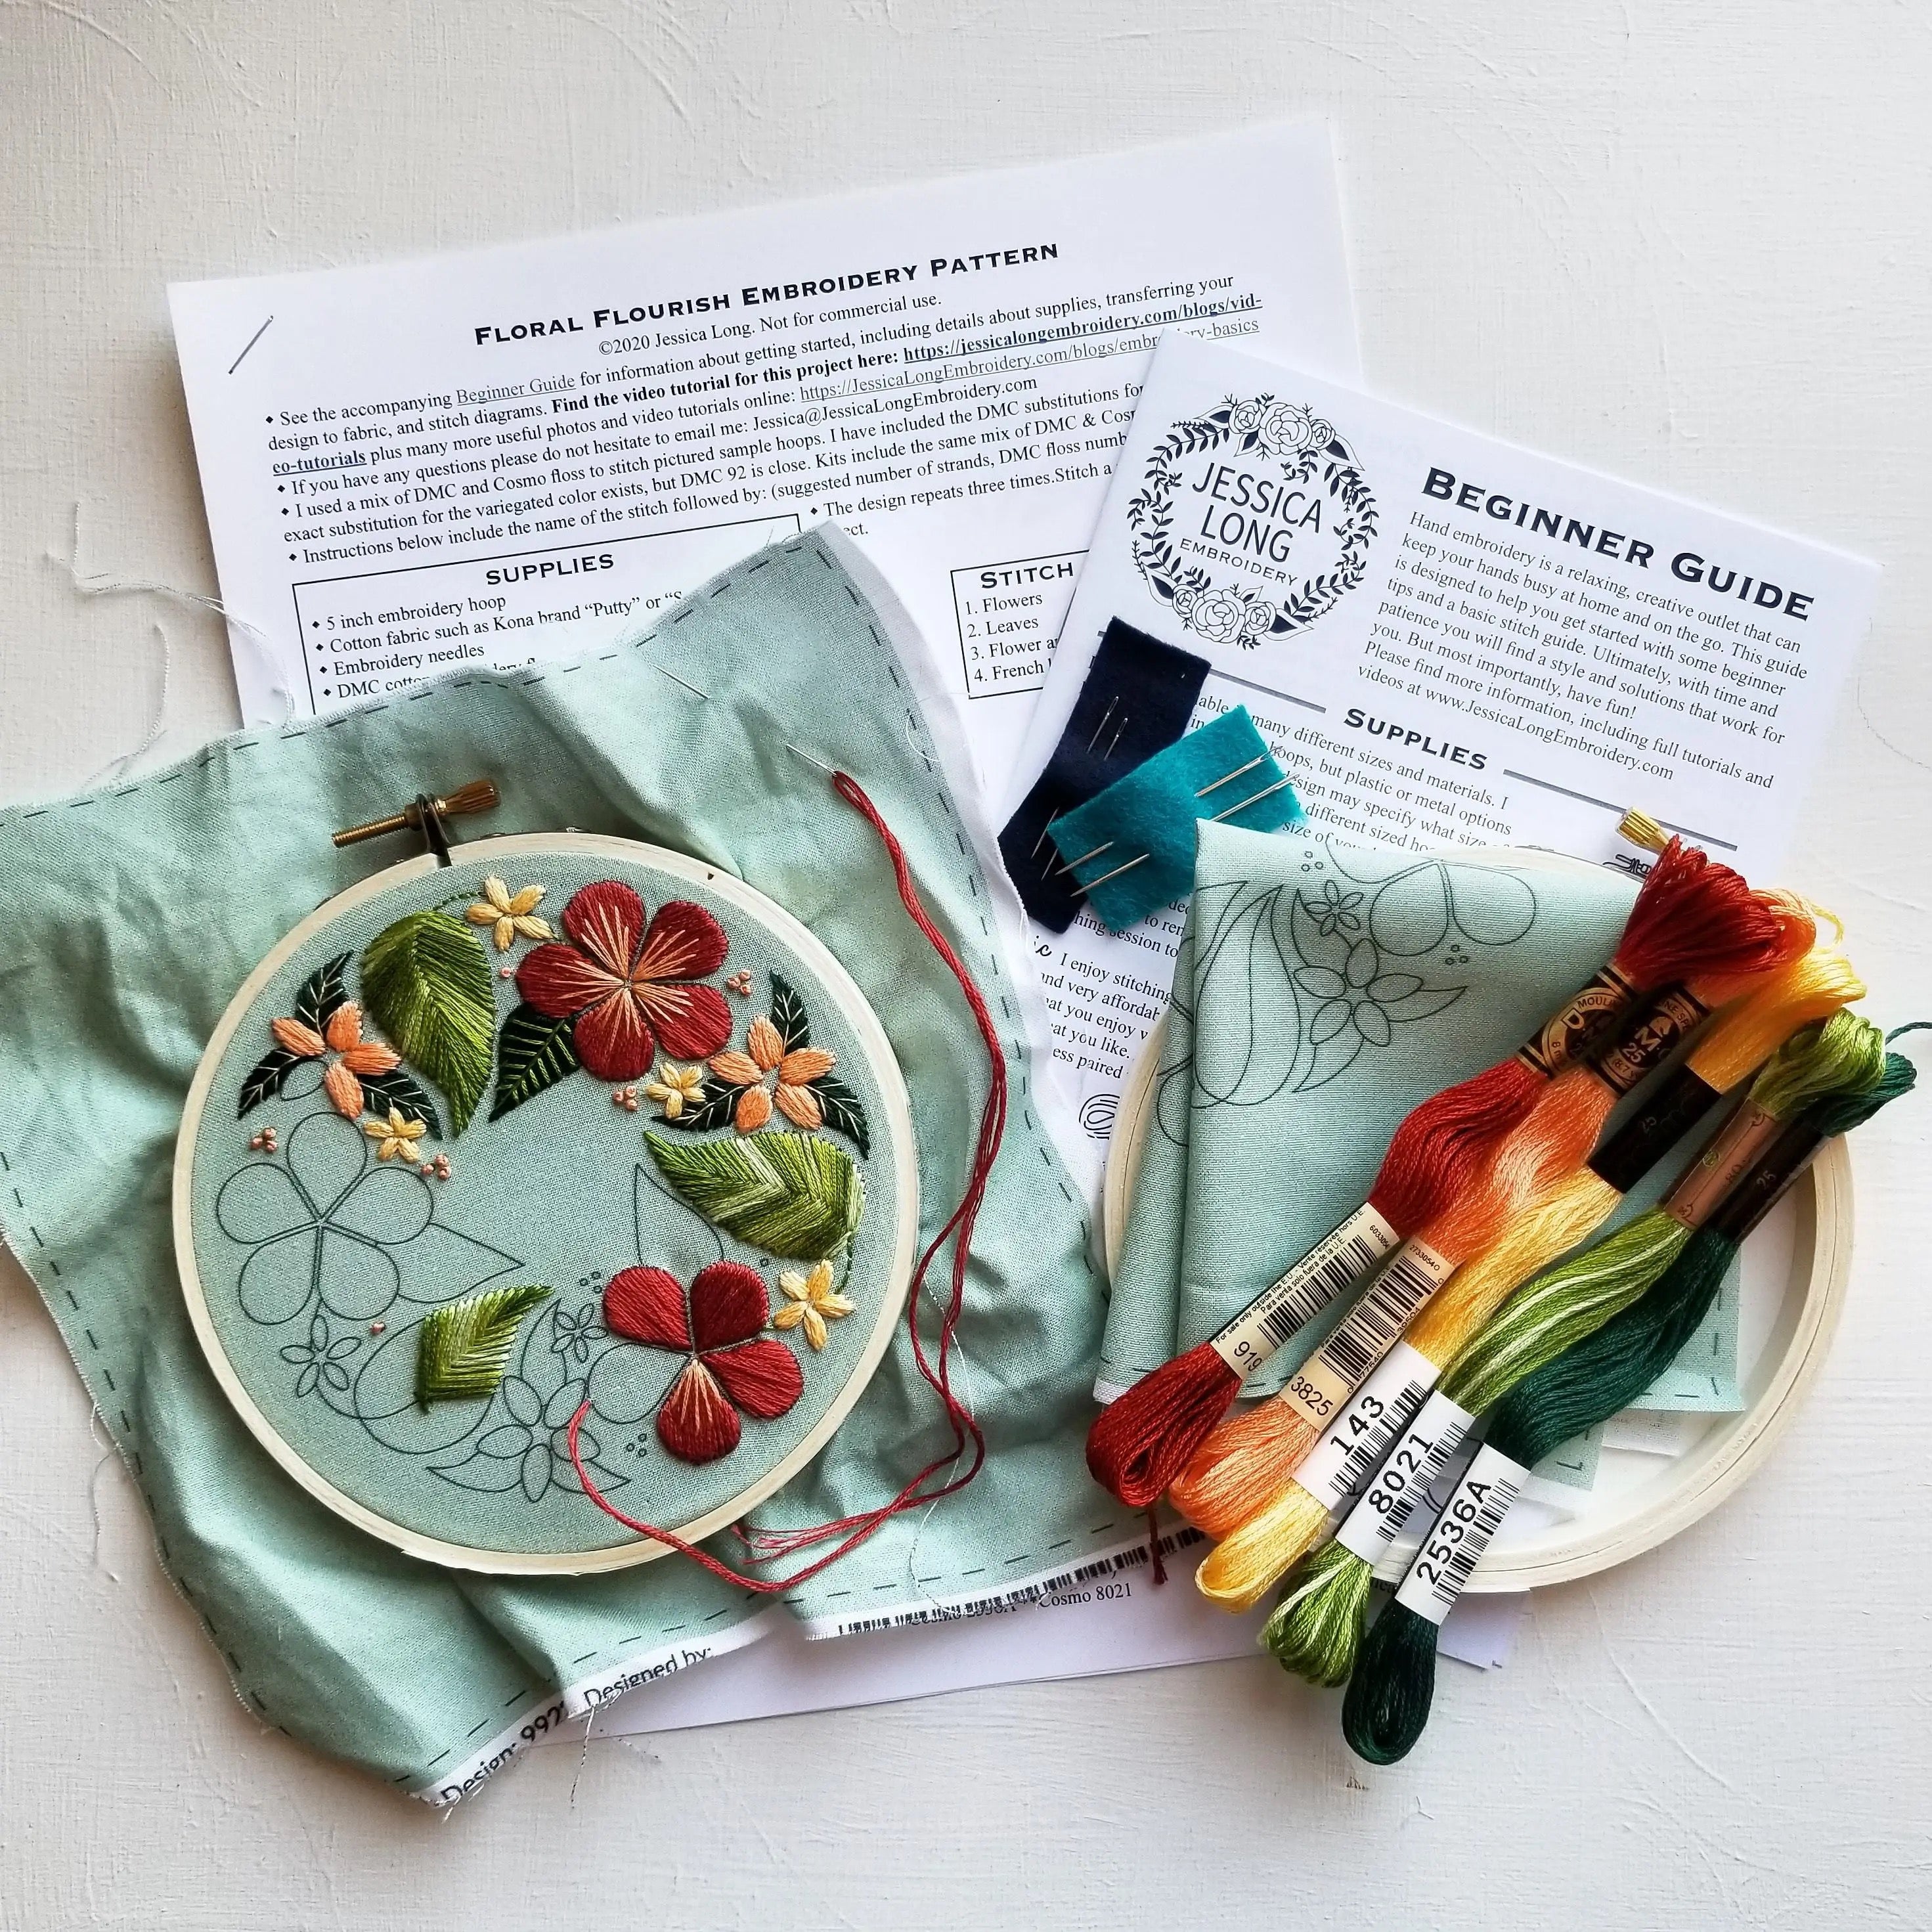 Stick & Stitch Embroidery Pattern Pack - Lemons & Floral – Snuggly Monkey